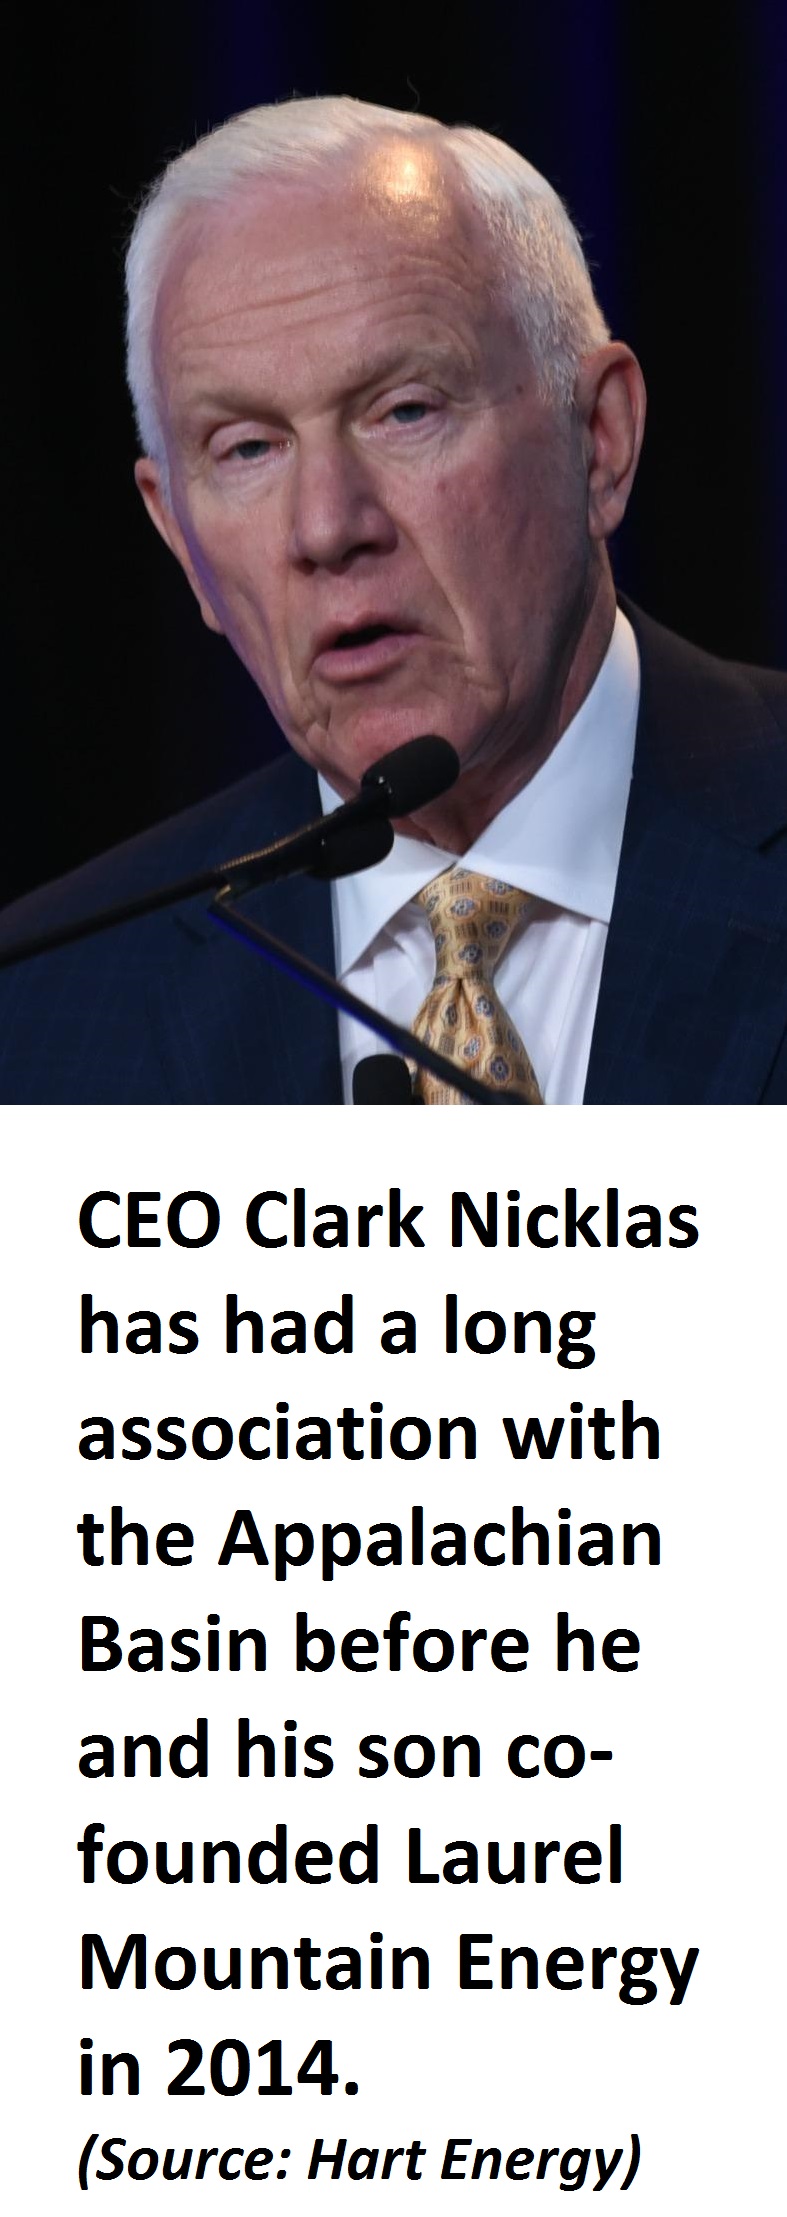 Laurel Mountain Energy CEO Clark Nicklas